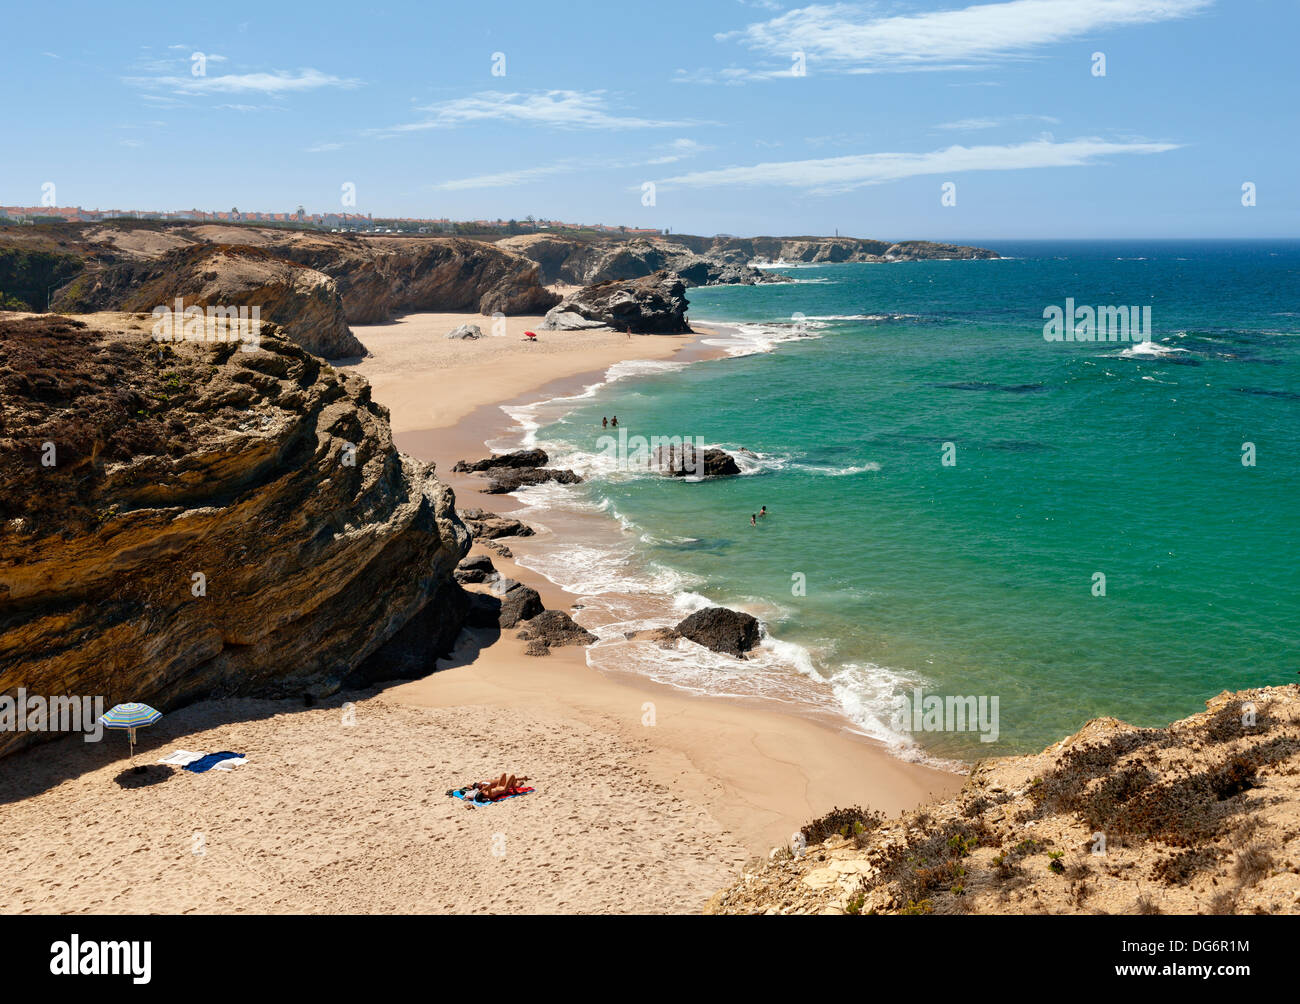 Portugal, the Alentejo, Costa Vicentina, Porto Covo beaches Stock Photo